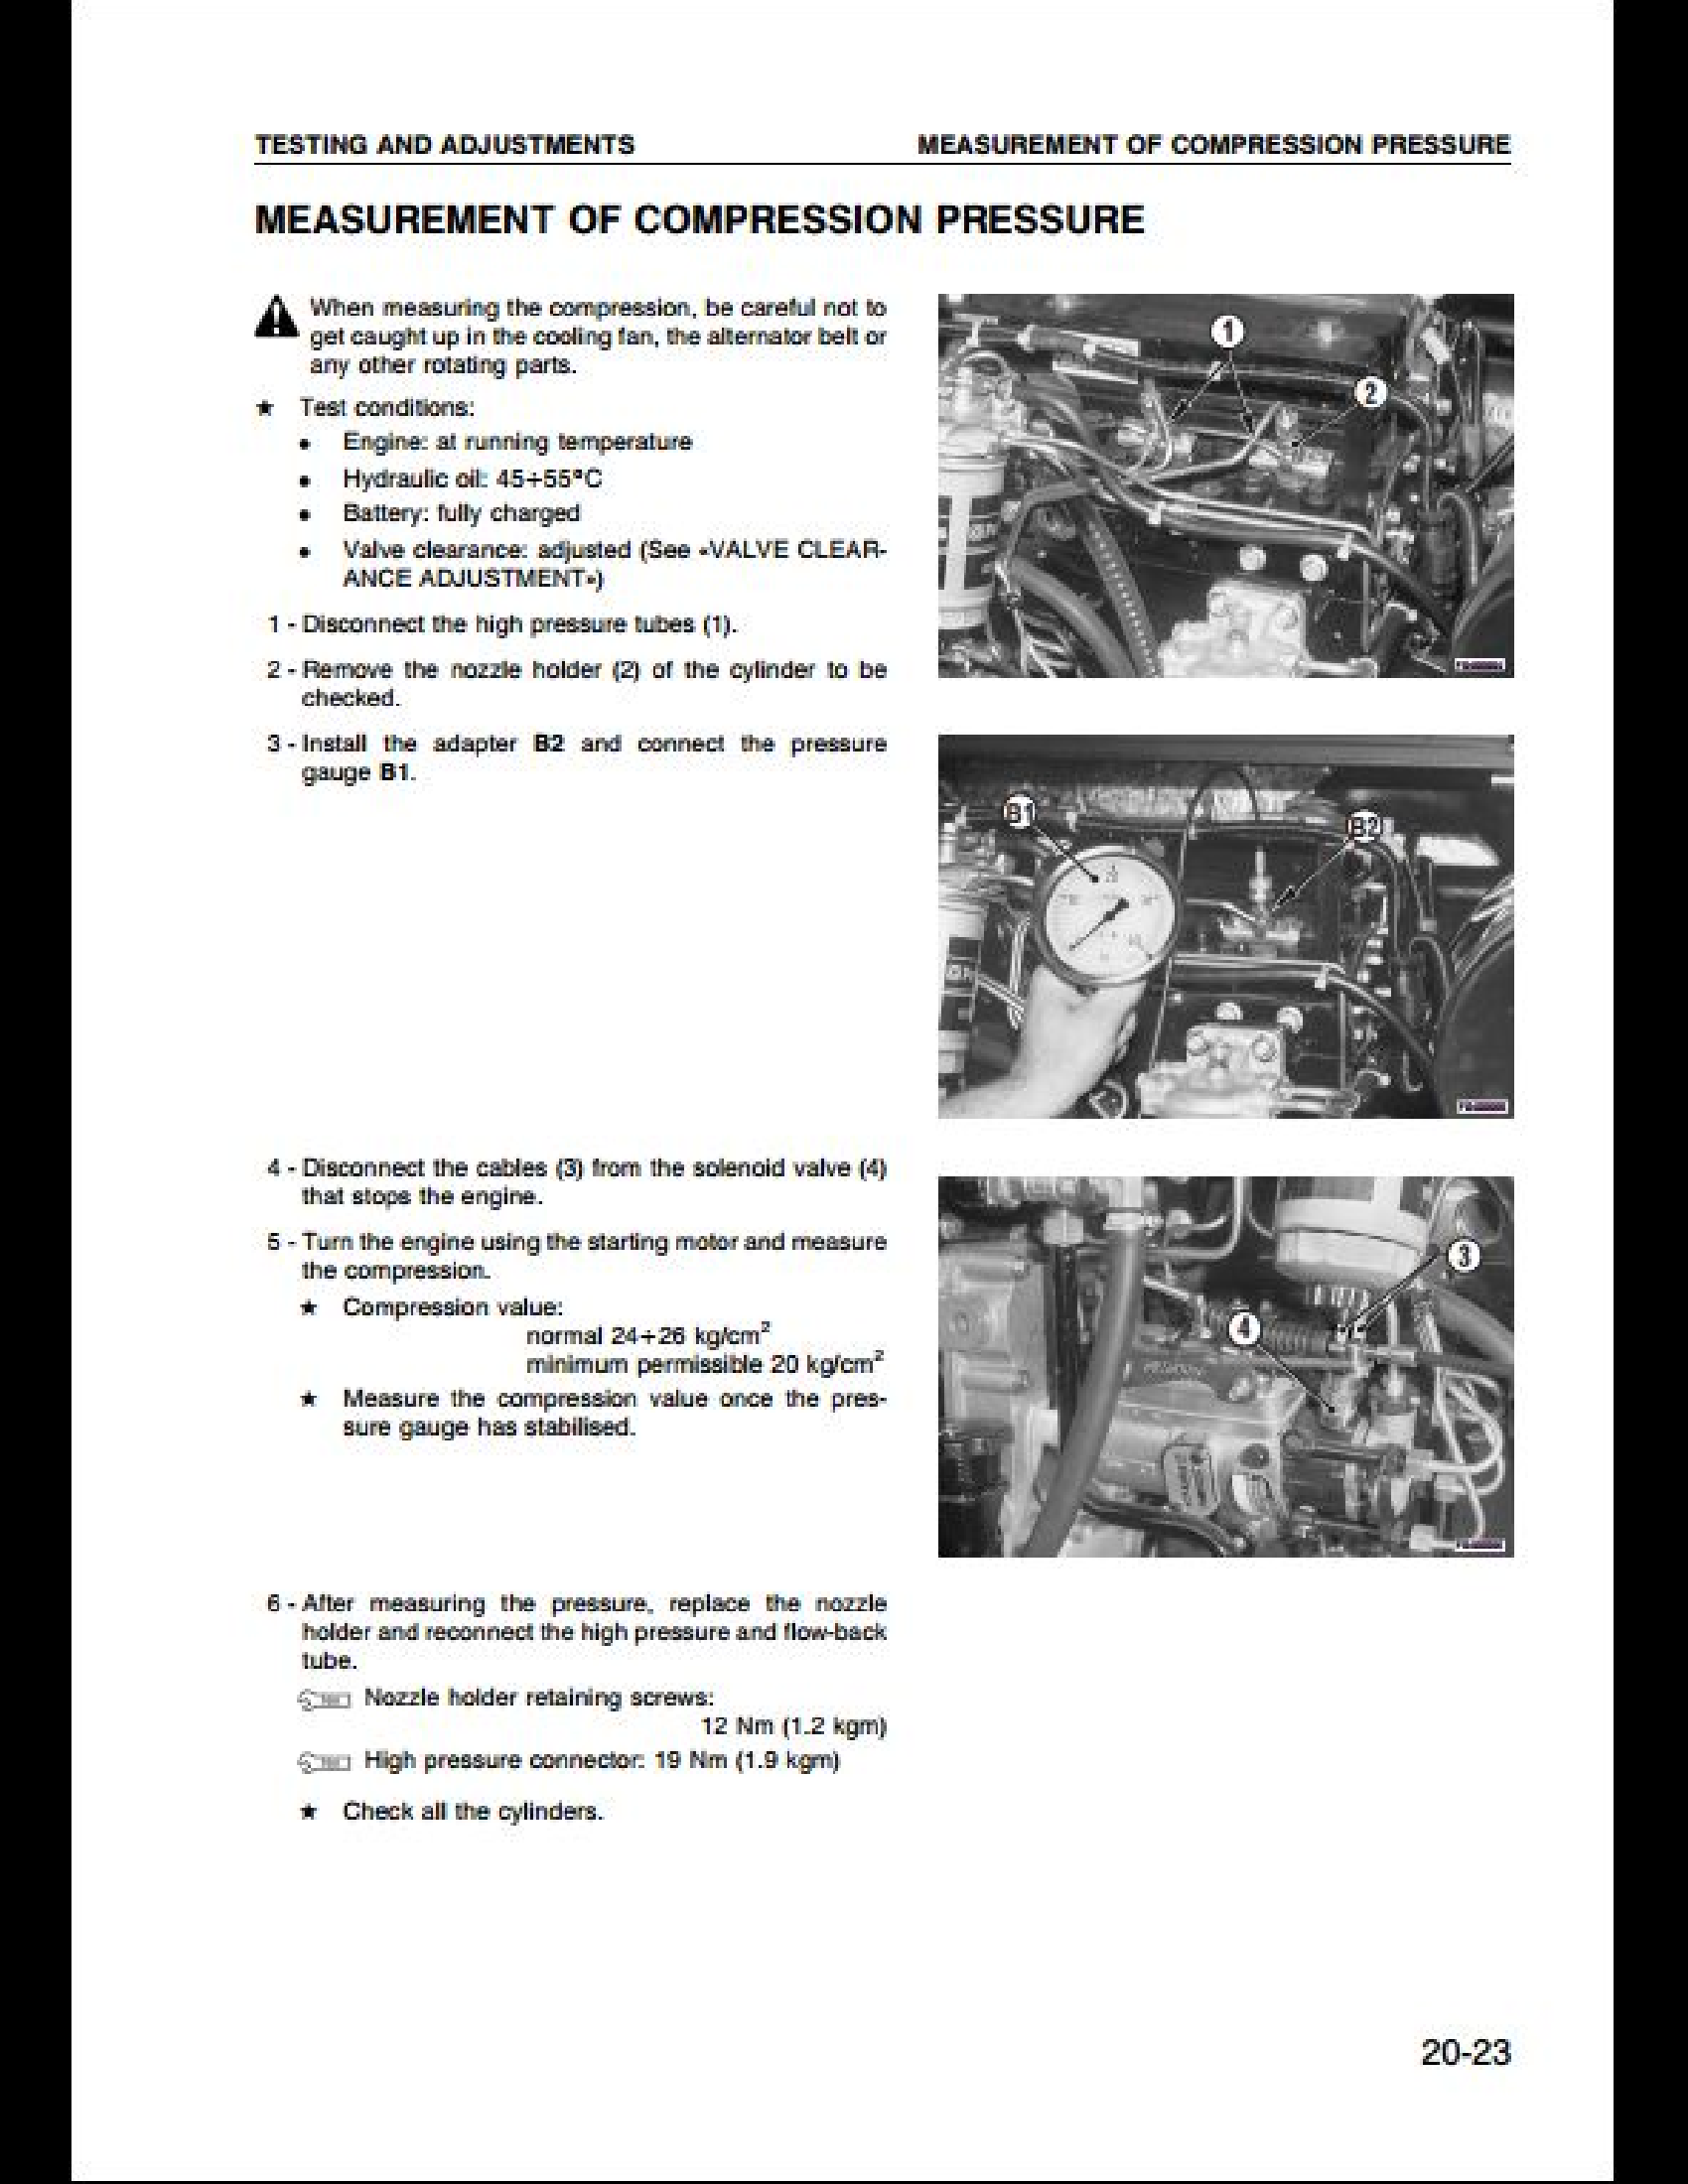 KOMATSU PW95-1 Hydraulic Excavator manual